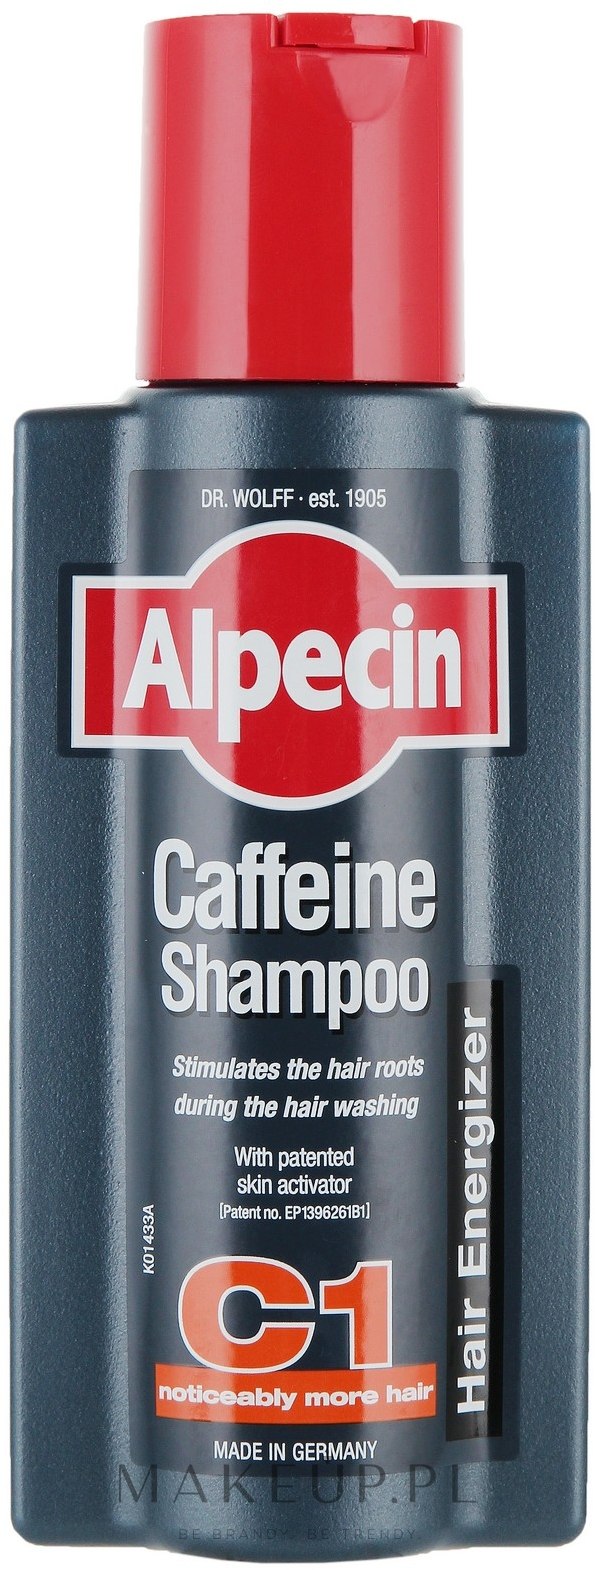 szampon alpecin c1 opinie